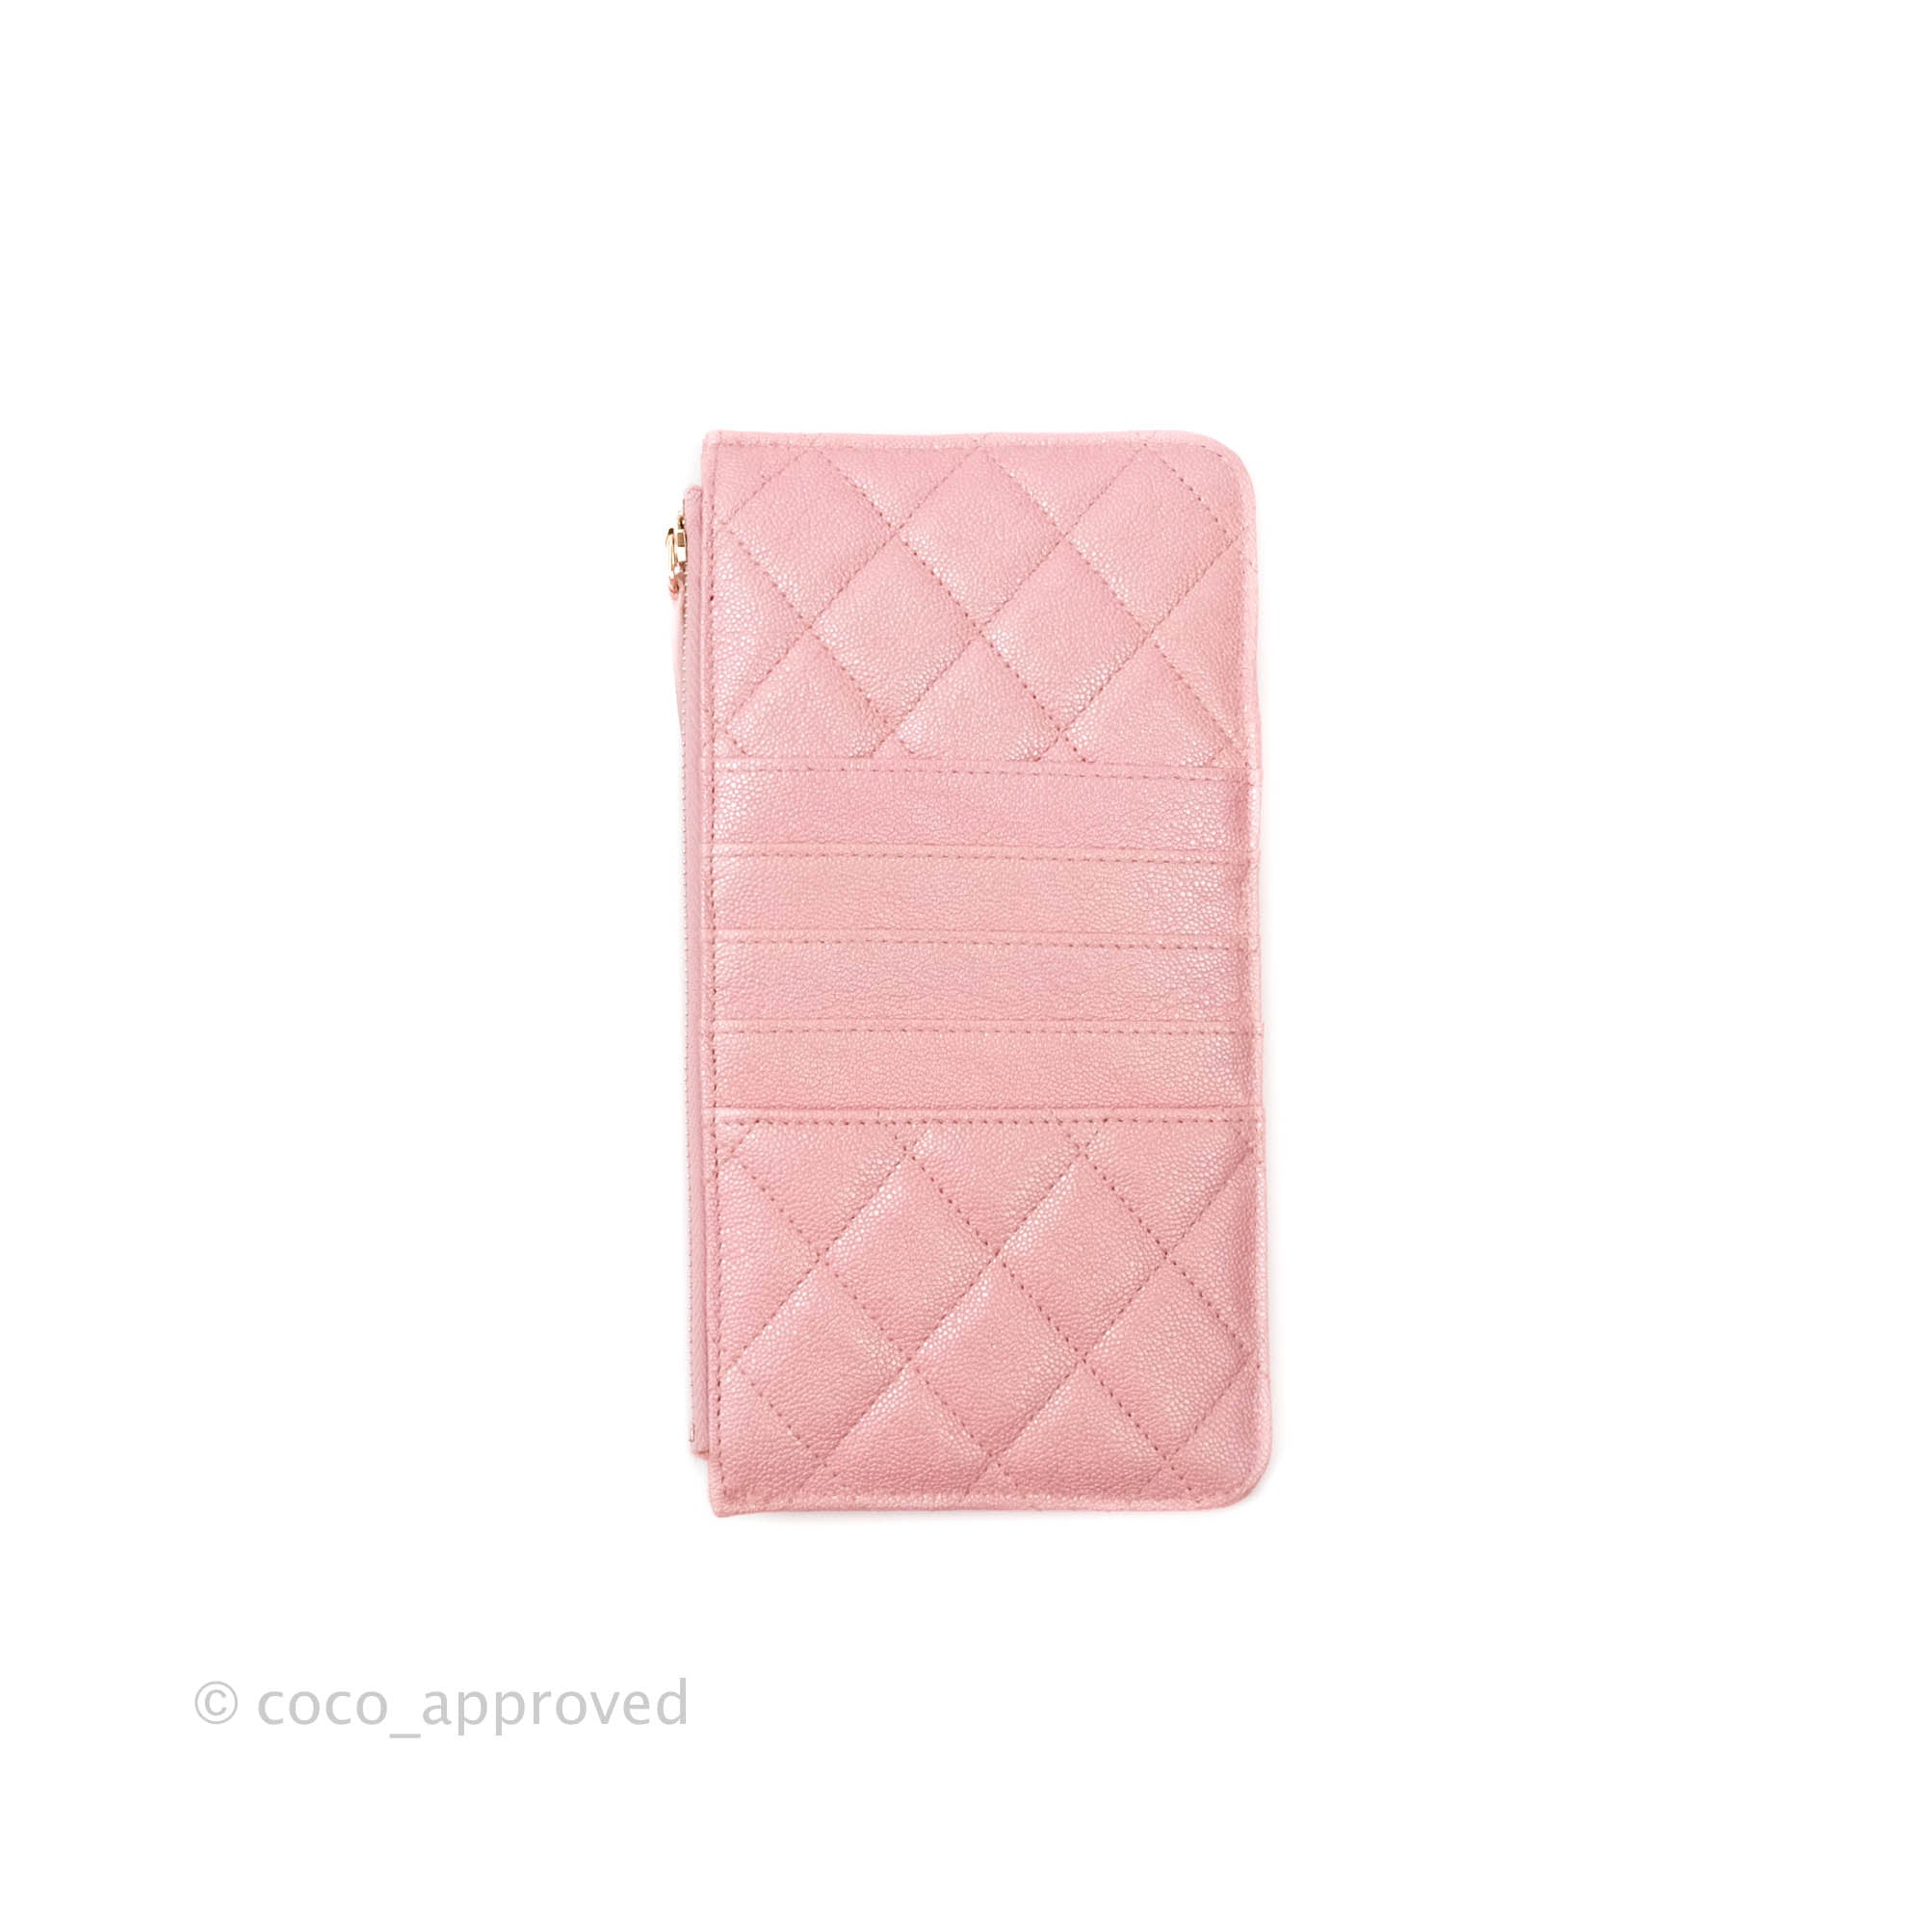 Chanel Iridescent Card Holder Calfskin Pink SHW